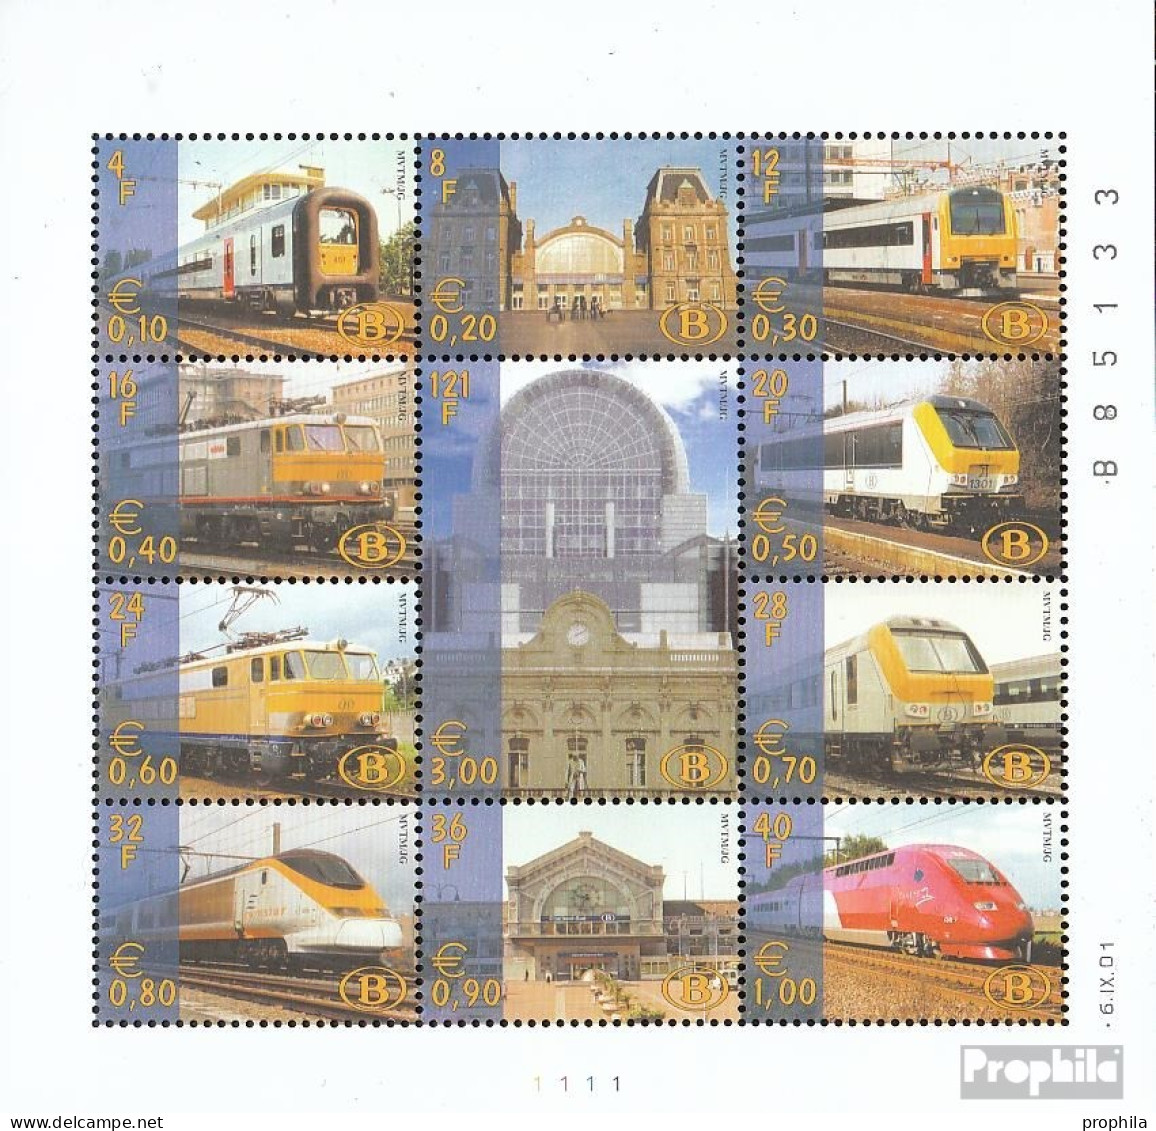 Belgien E Kleinbogen1/2001 (kompl.Ausg.) Postfrisch 2001 Eisenbahnmarke Privatausgabe - 1996-2013 Vignettes [TRV]